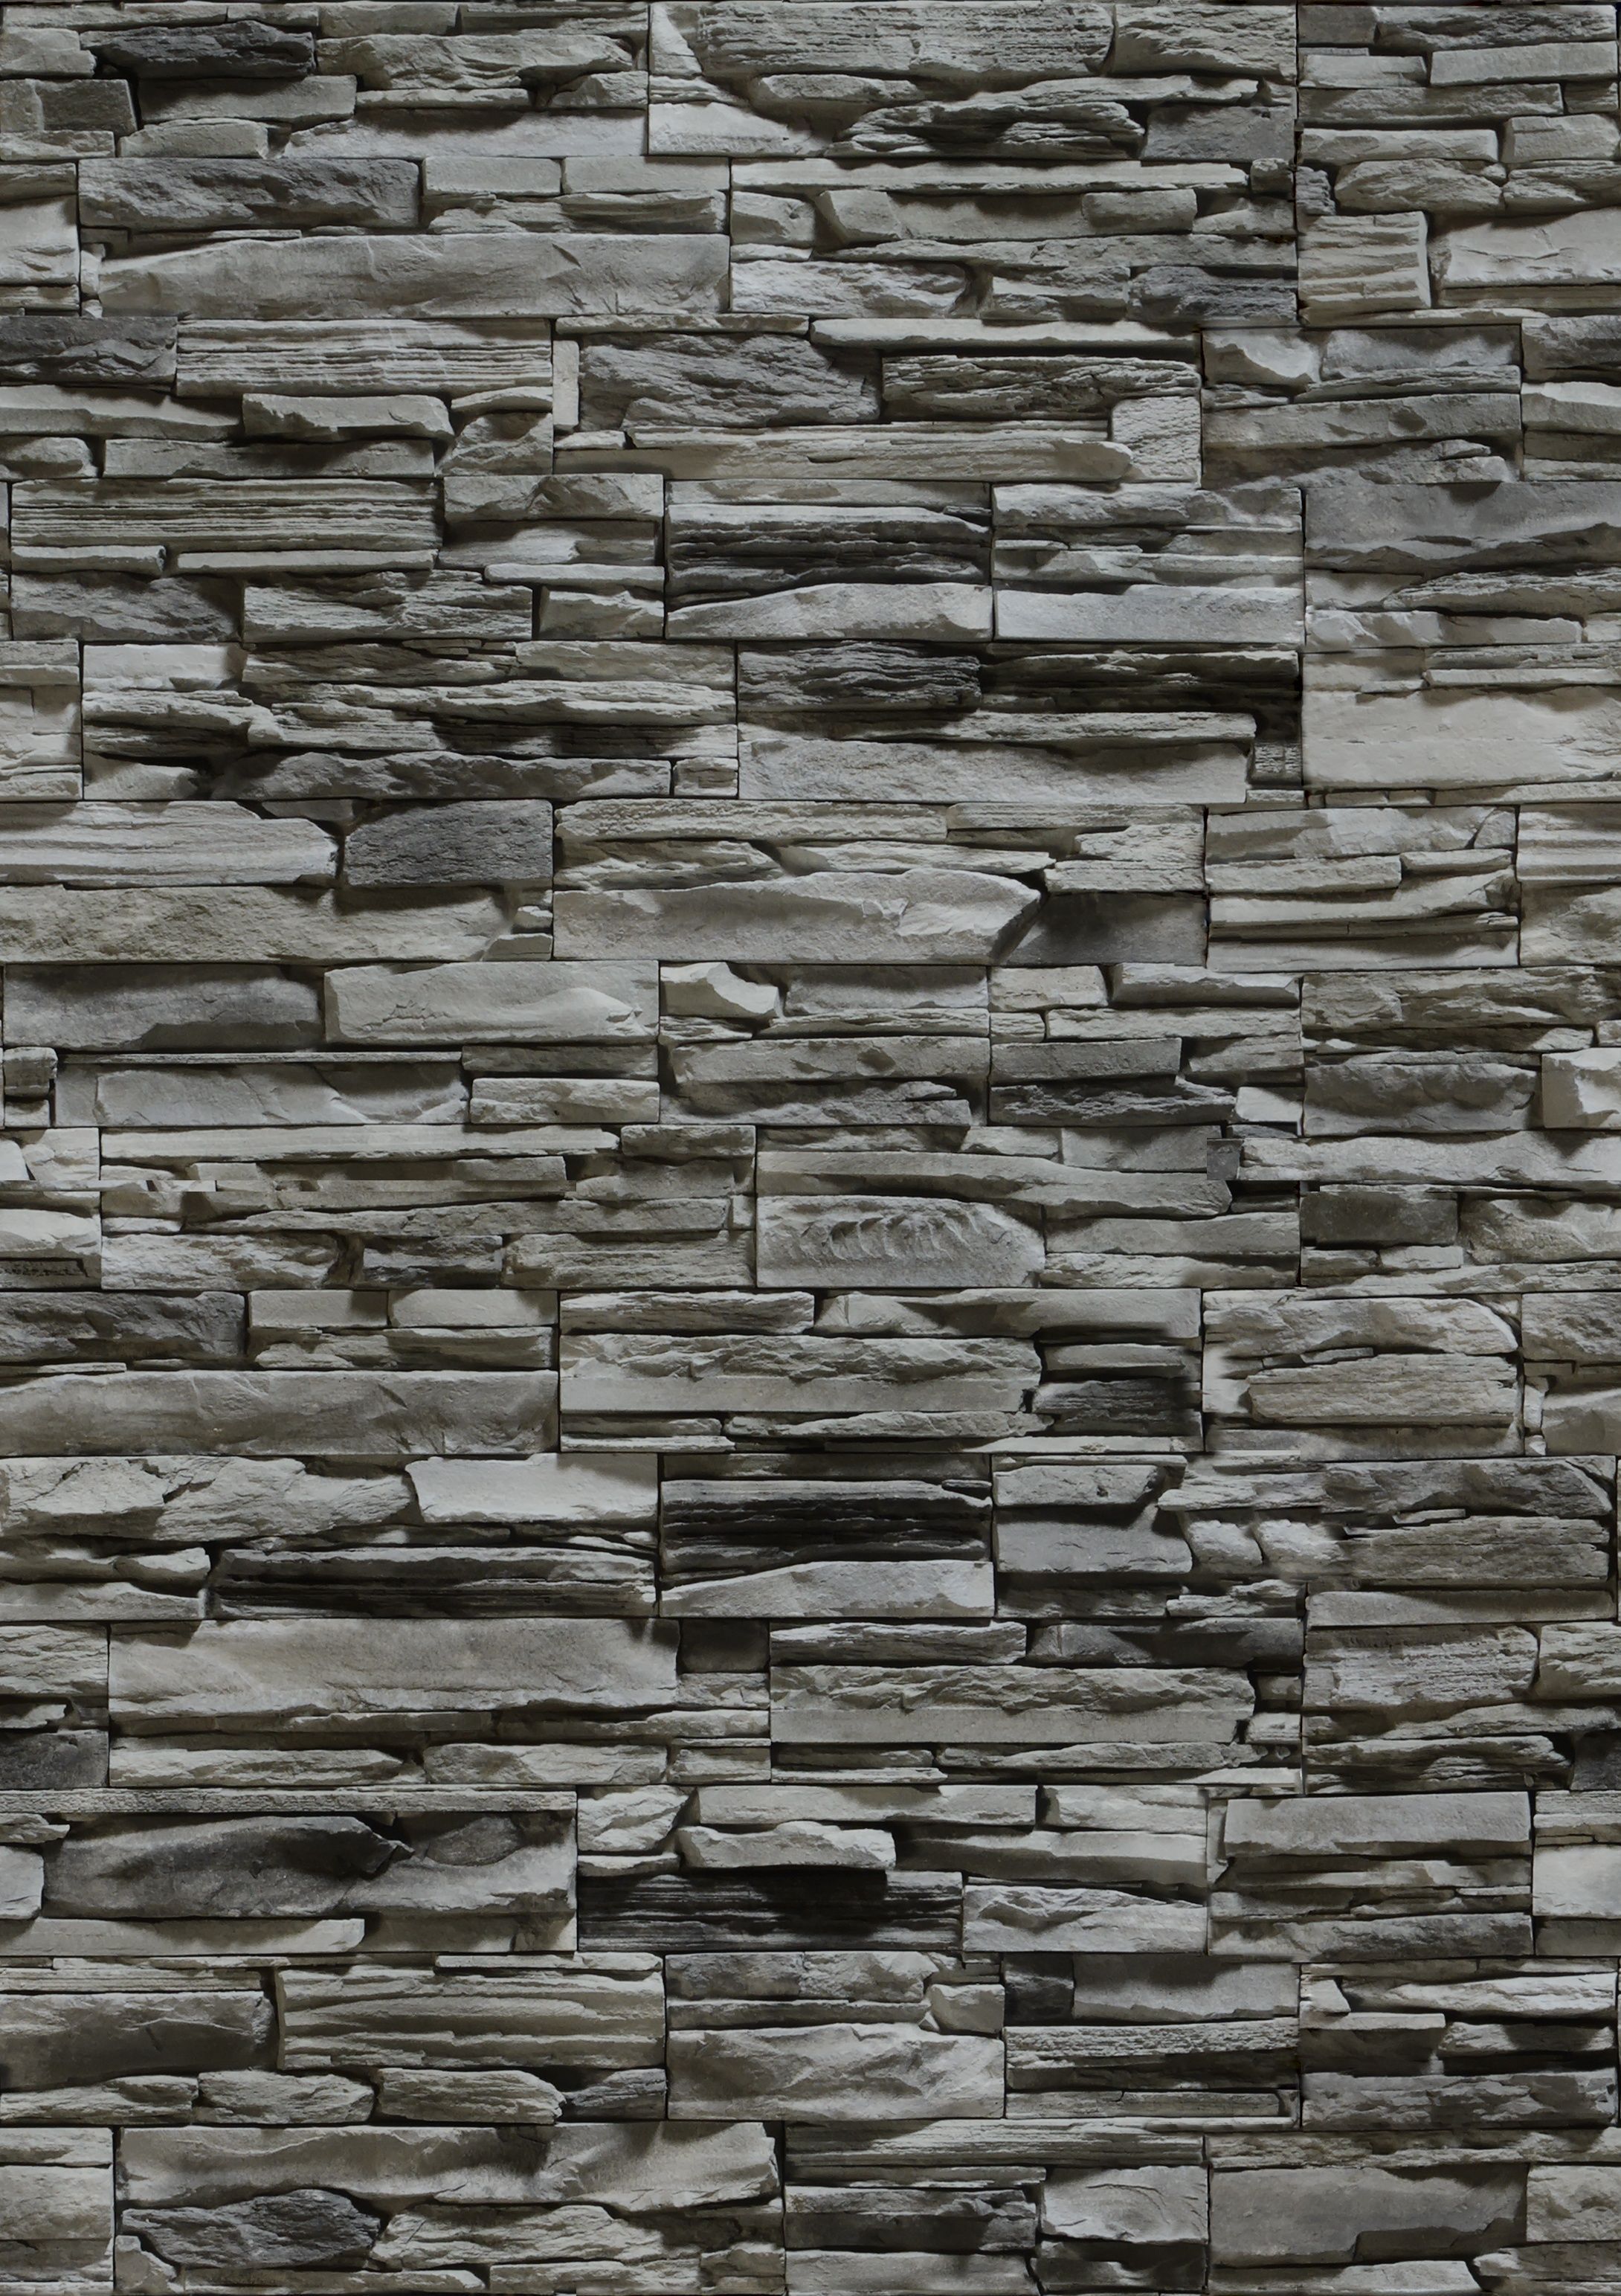 дикий stone, wall, texture stone, stone wall, download background, stone background. Stone texture, Brick texture, Texture